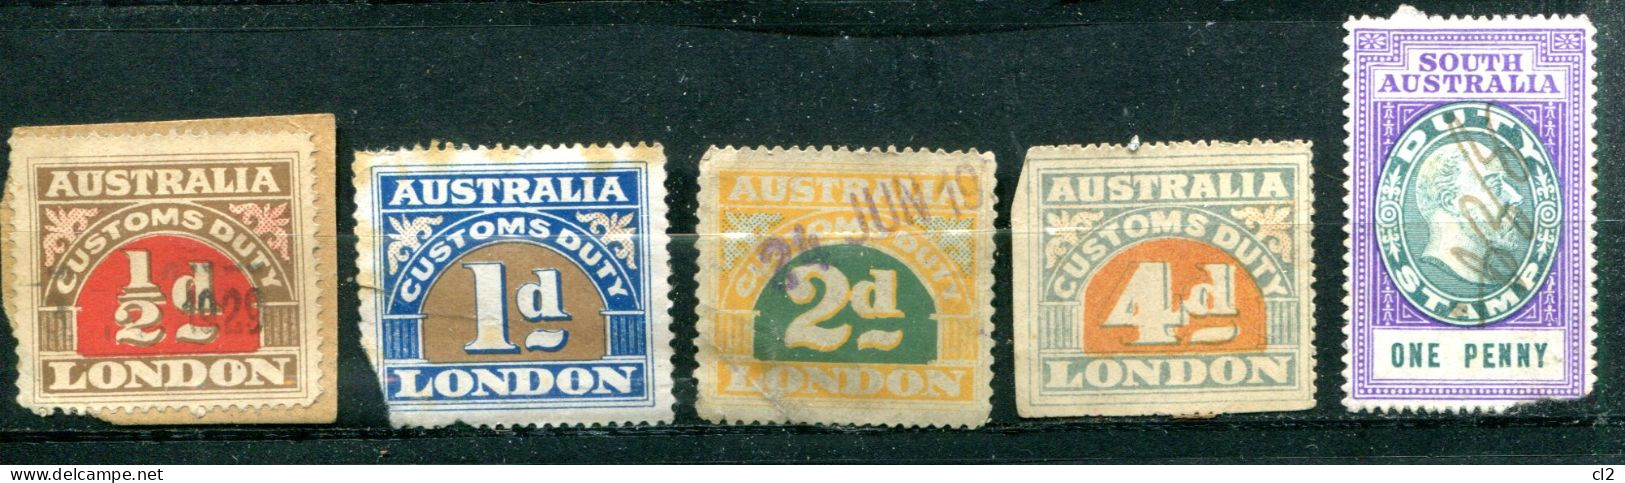 AUSTRALIE - Lot De 5 Timbres Fiscaux - Revenue Stamps